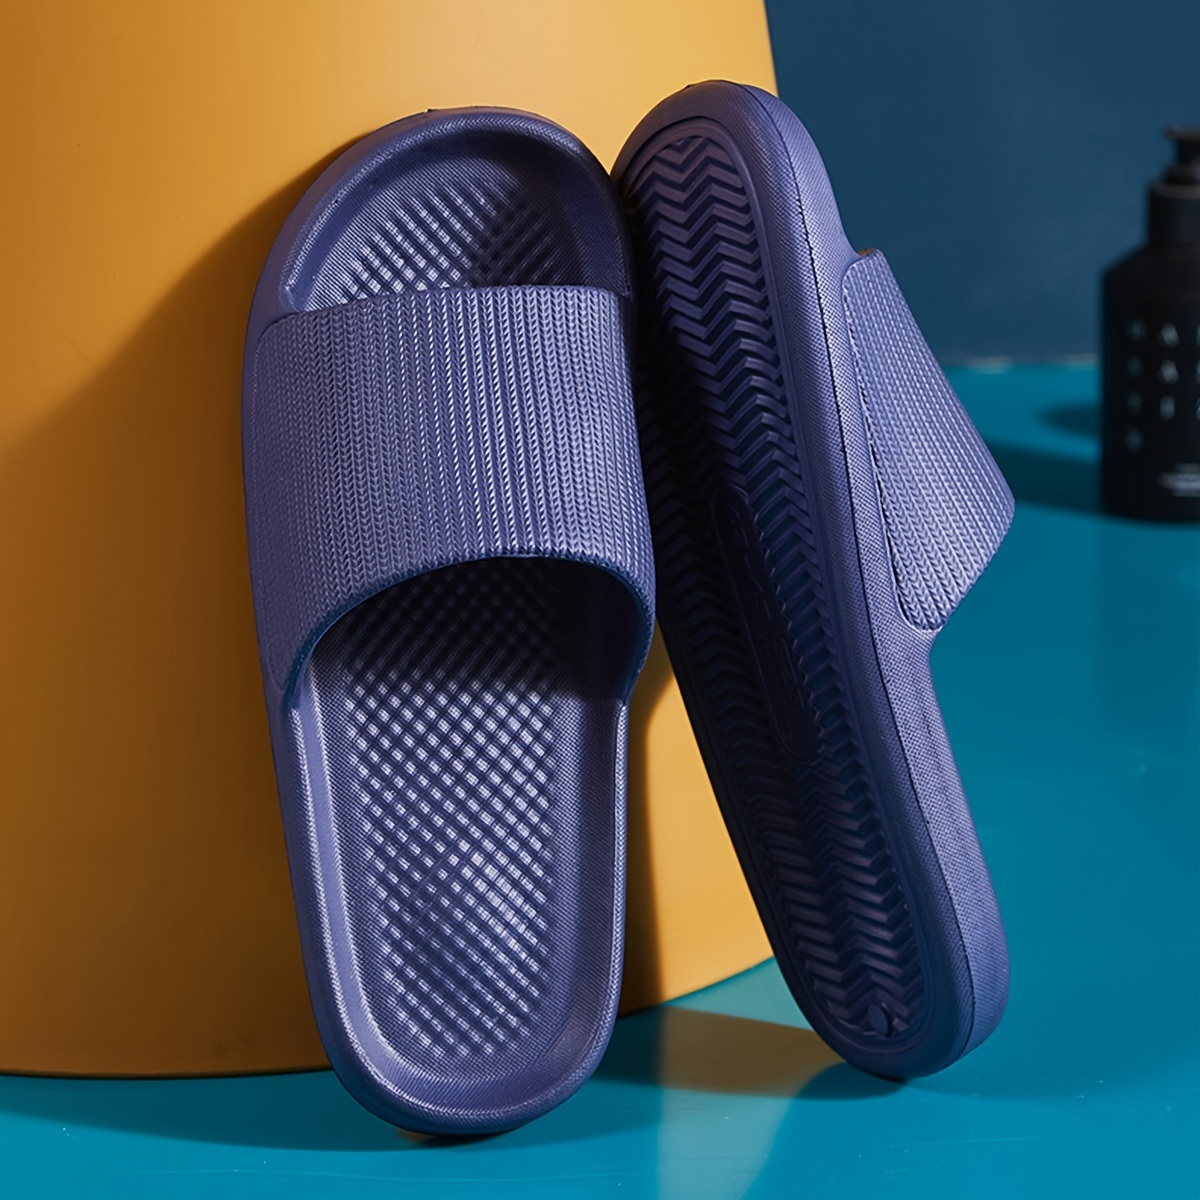 

Men Slides Lightweight Non Slip Open Toe Quick Dry Slippers For Indoor Outdoor Bathroom Beach Summer